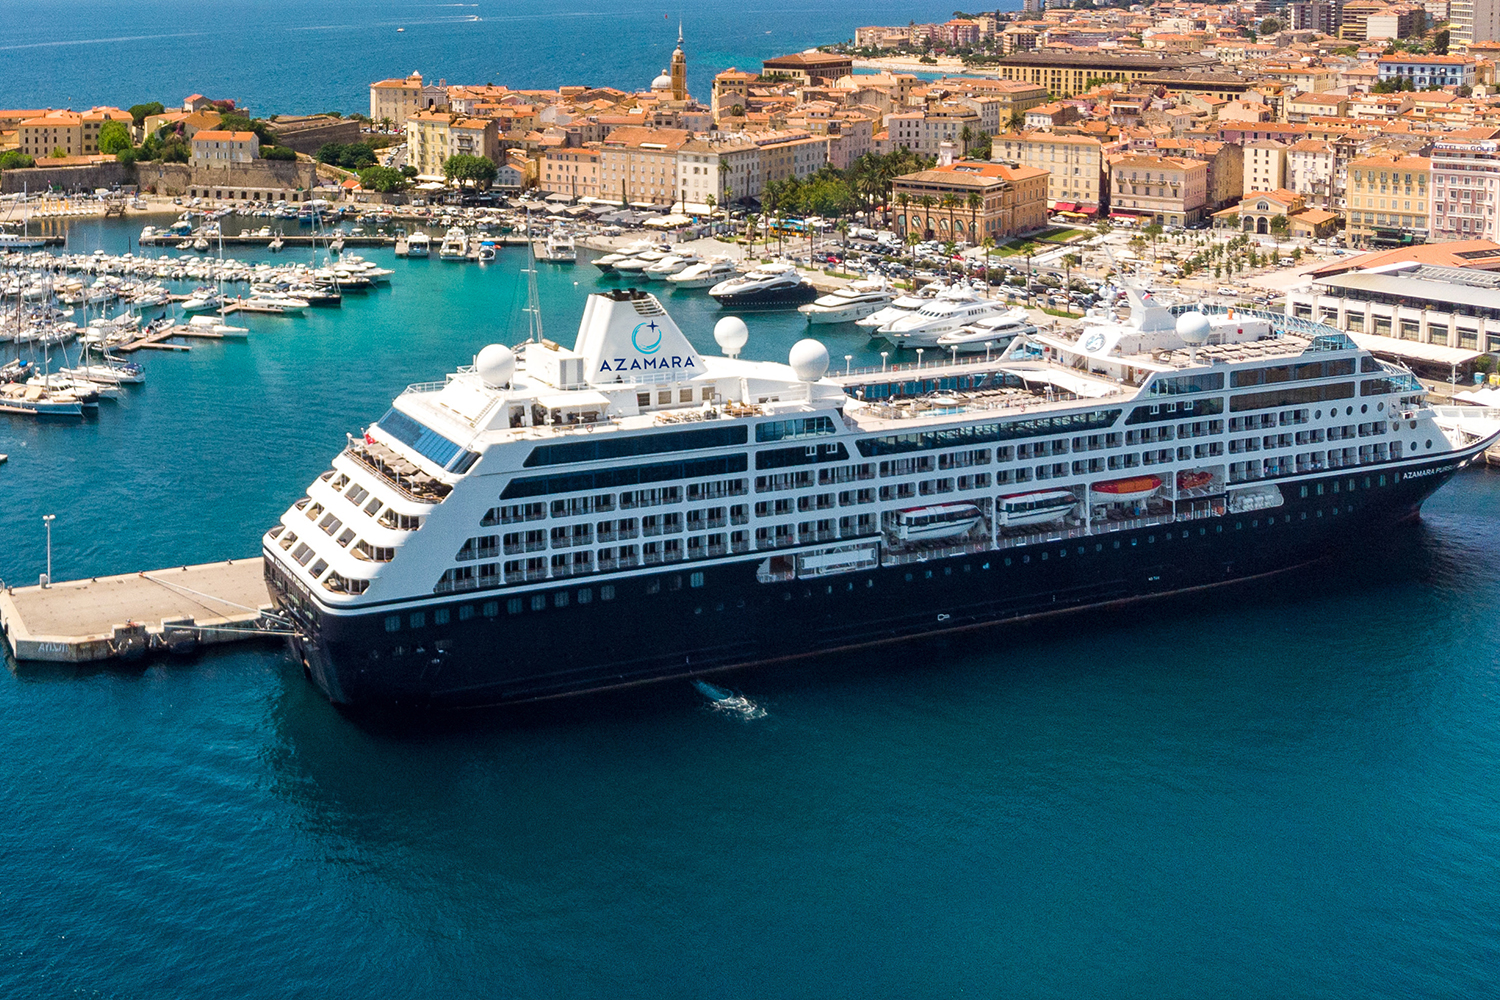 azamara mediterranean cruise 2022